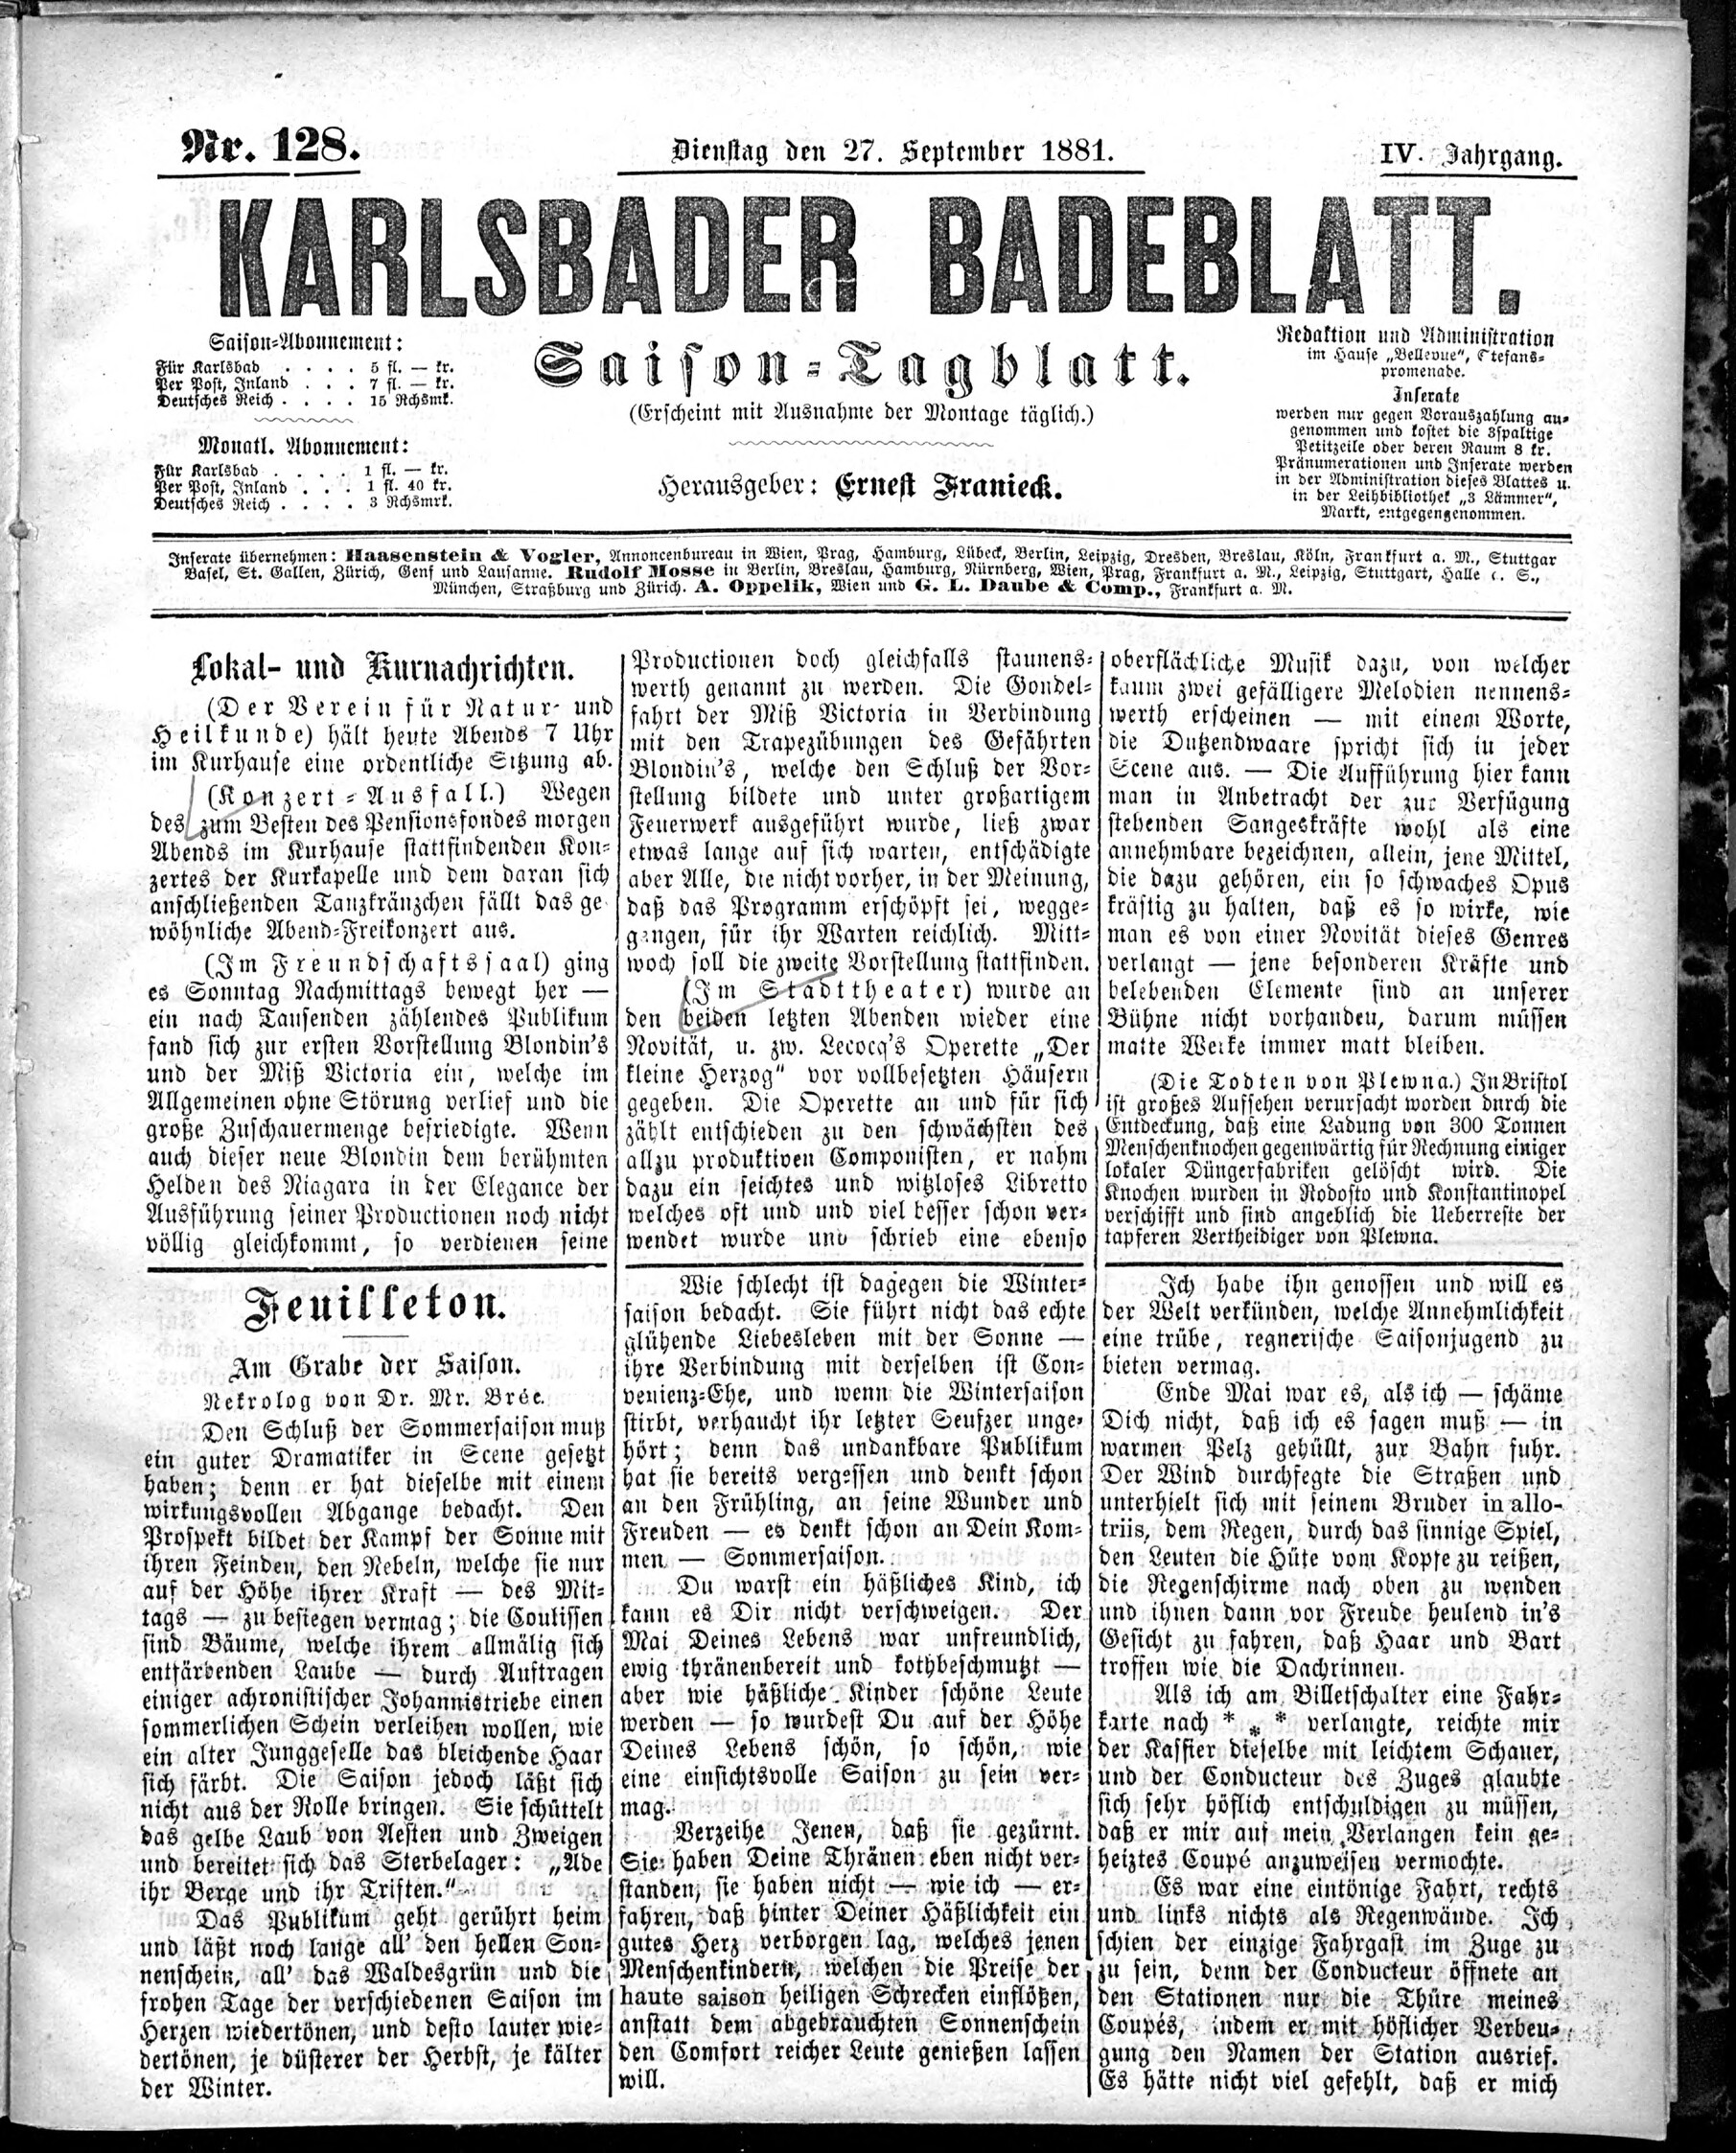 1. karlsbader-badeblatt-1881-09-27-n128_2605